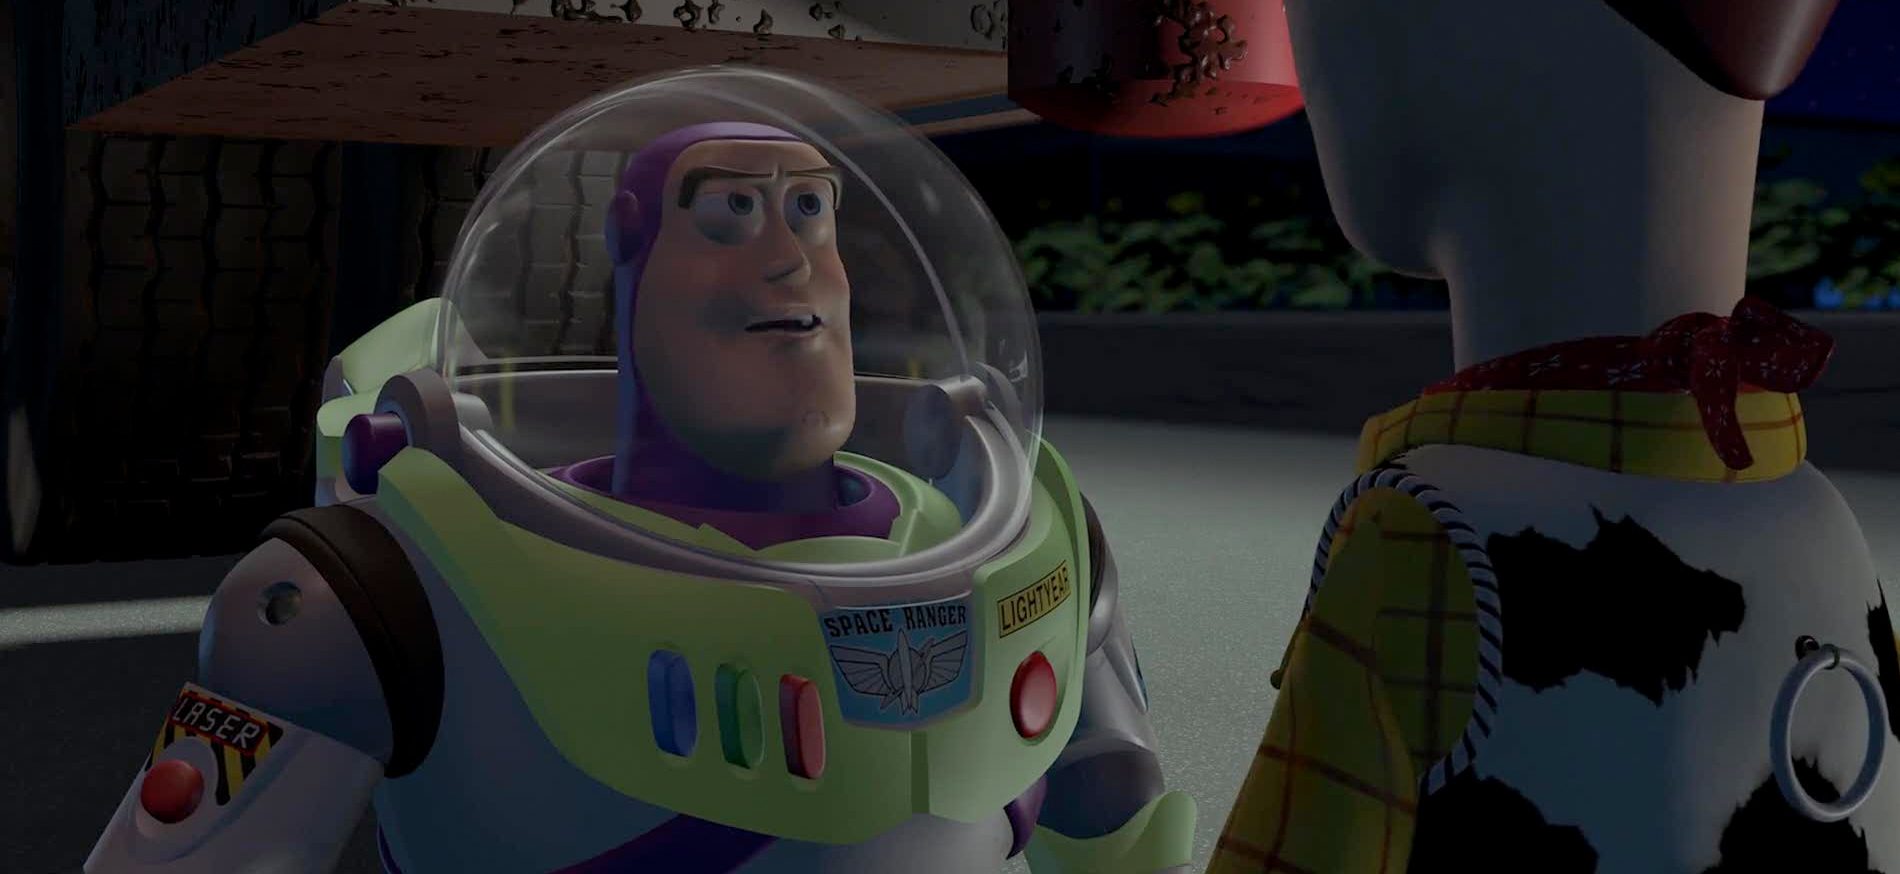 “¡Eres un juguete!”, ¿o no? Mirá el video en el que Buzz Lightyear mueve la cabeza